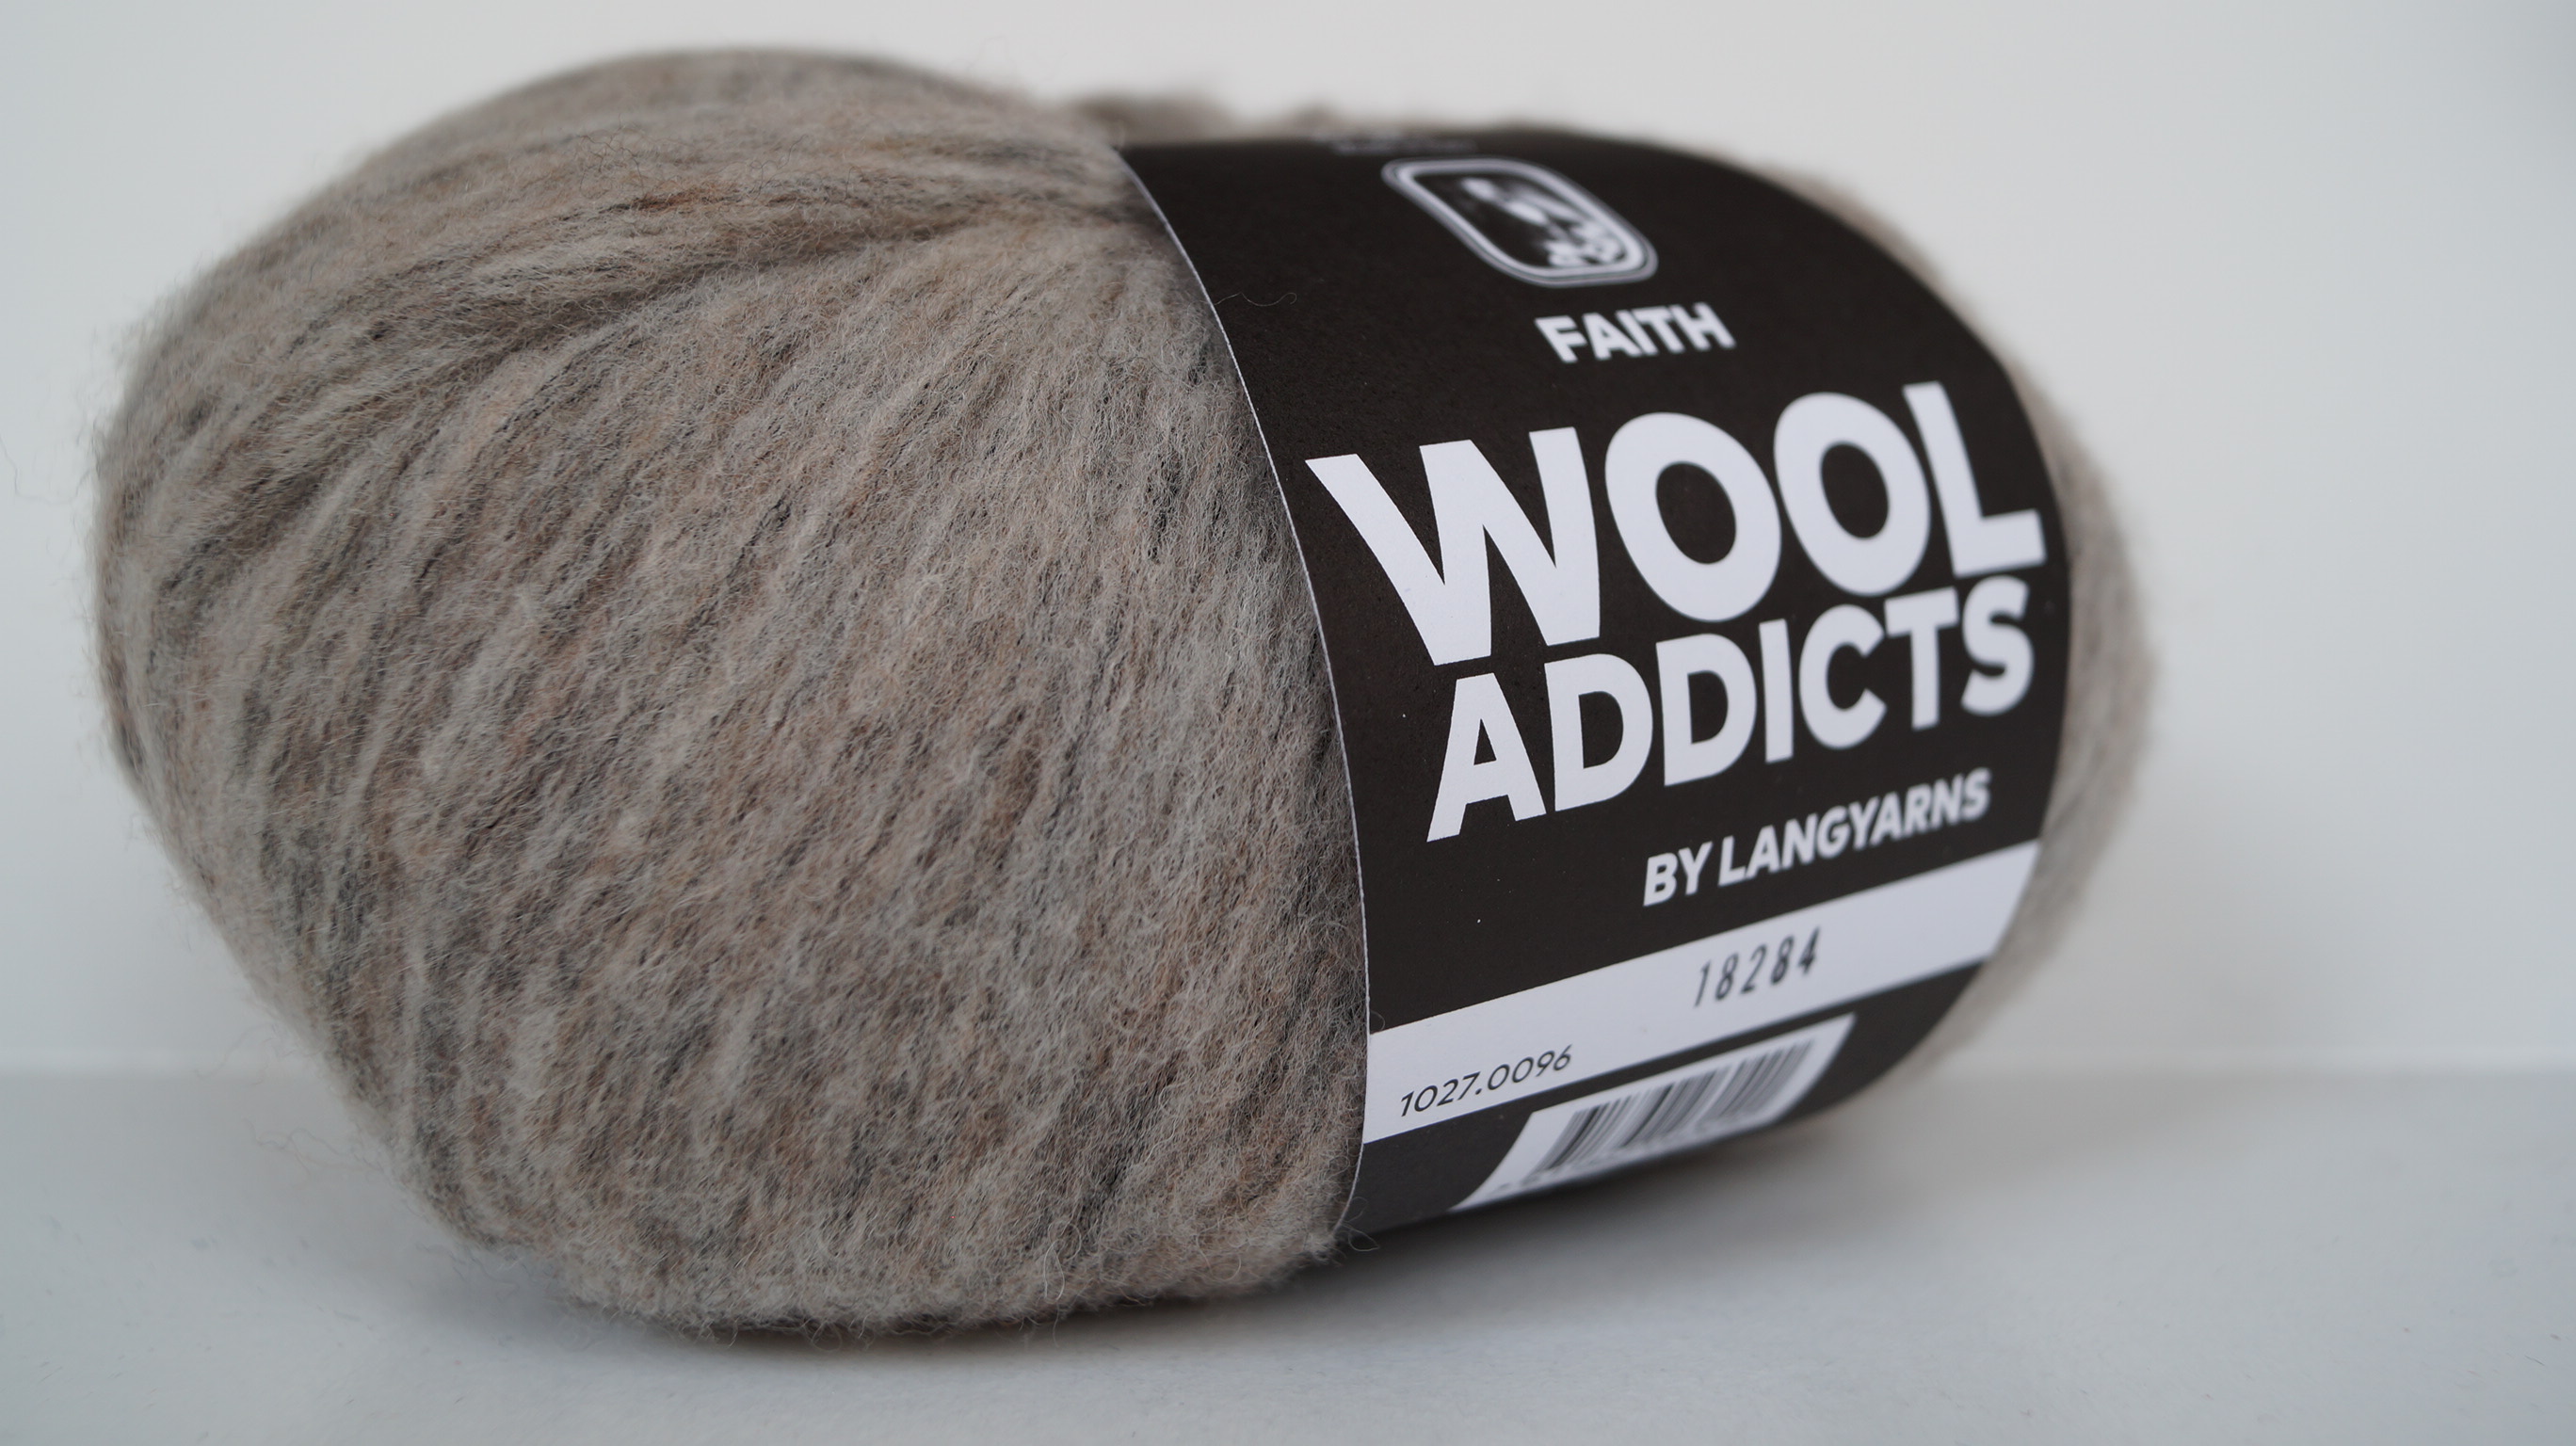 Faith wool addicts